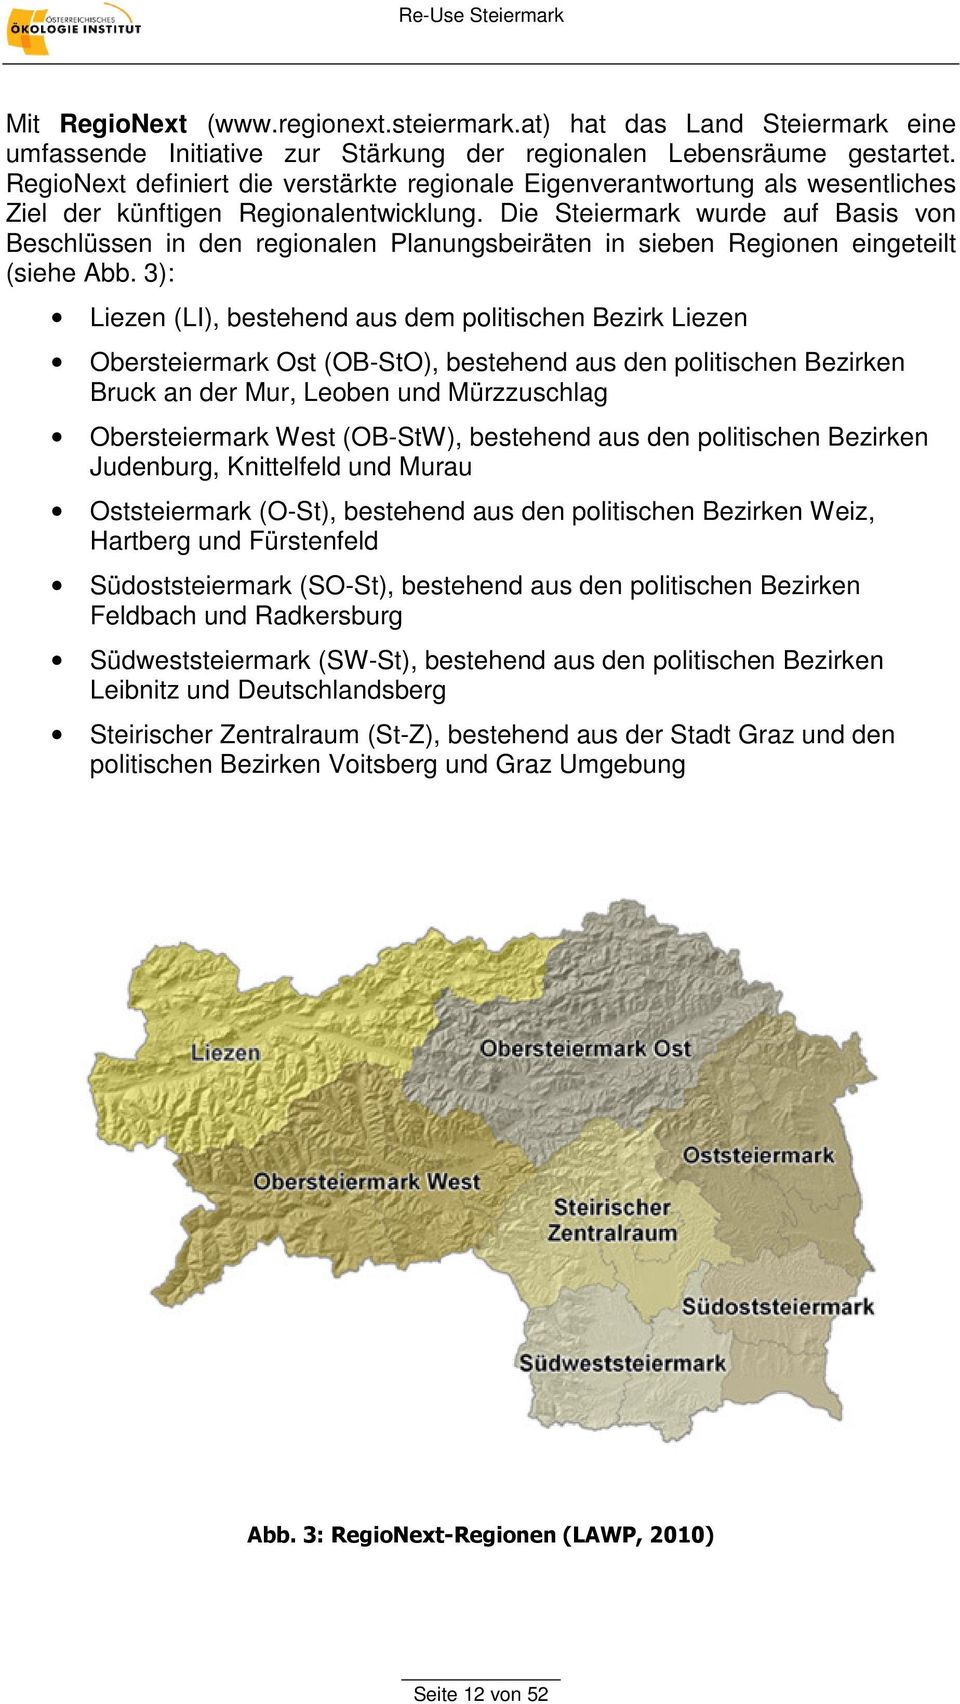 Die Steiermark wurde auf Basis von Beschlüssen in den regionalen Planungsbeiräten in sieben Regionen eingeteilt (siehe Abb.